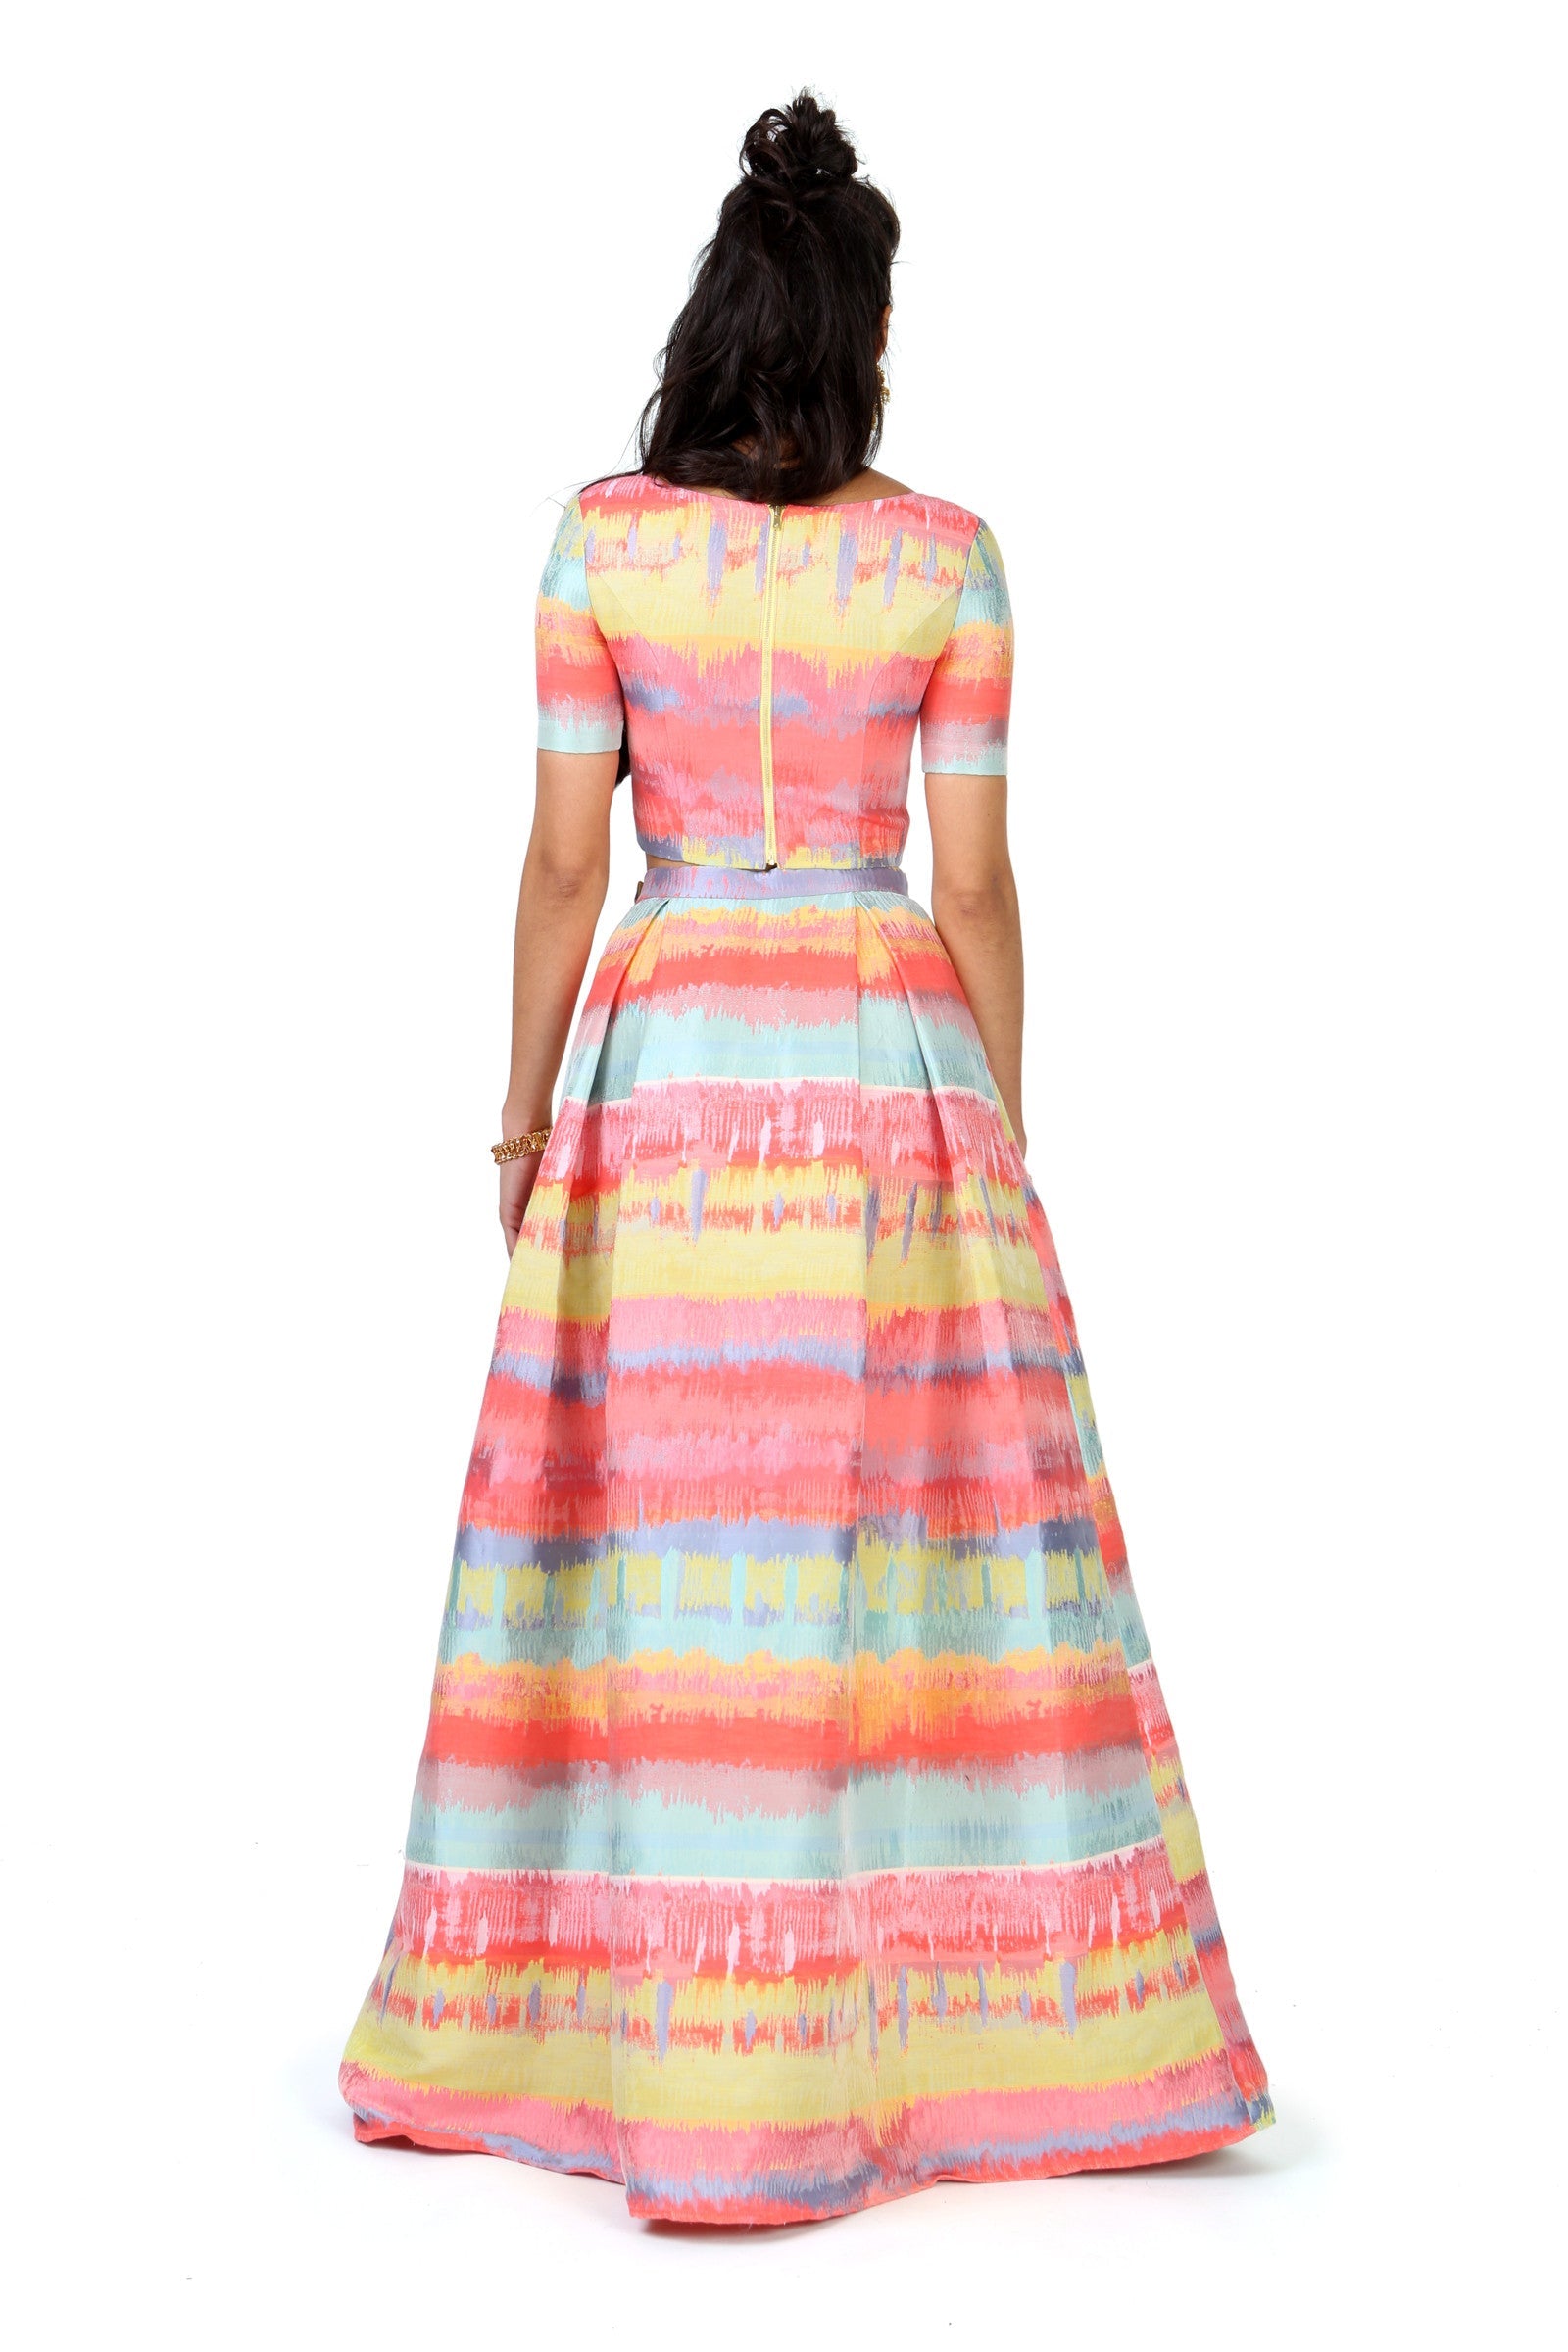 Multicolor Paint Jacquard Lehenga Skirt - Harleen Kaur - Indowestern Womenswear